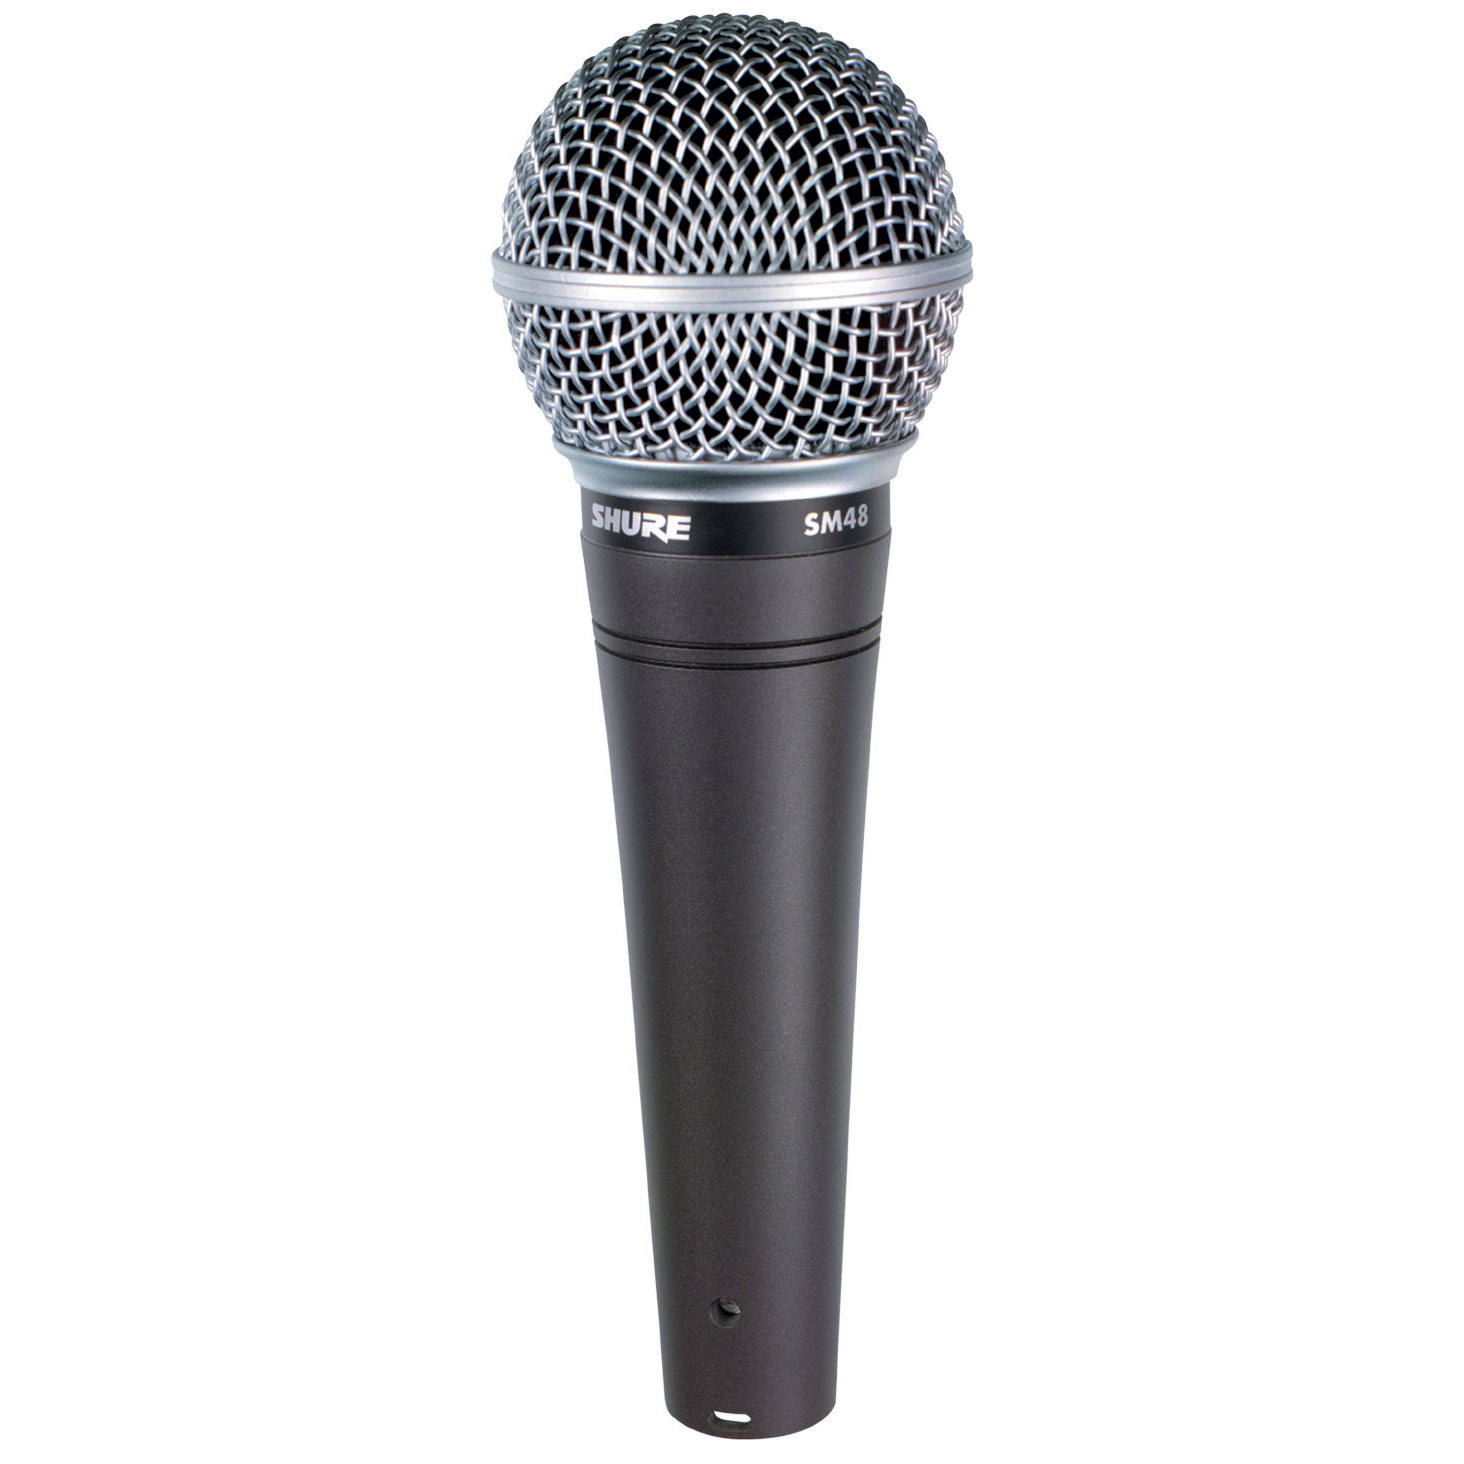 Microphone không dây shure SM48LC